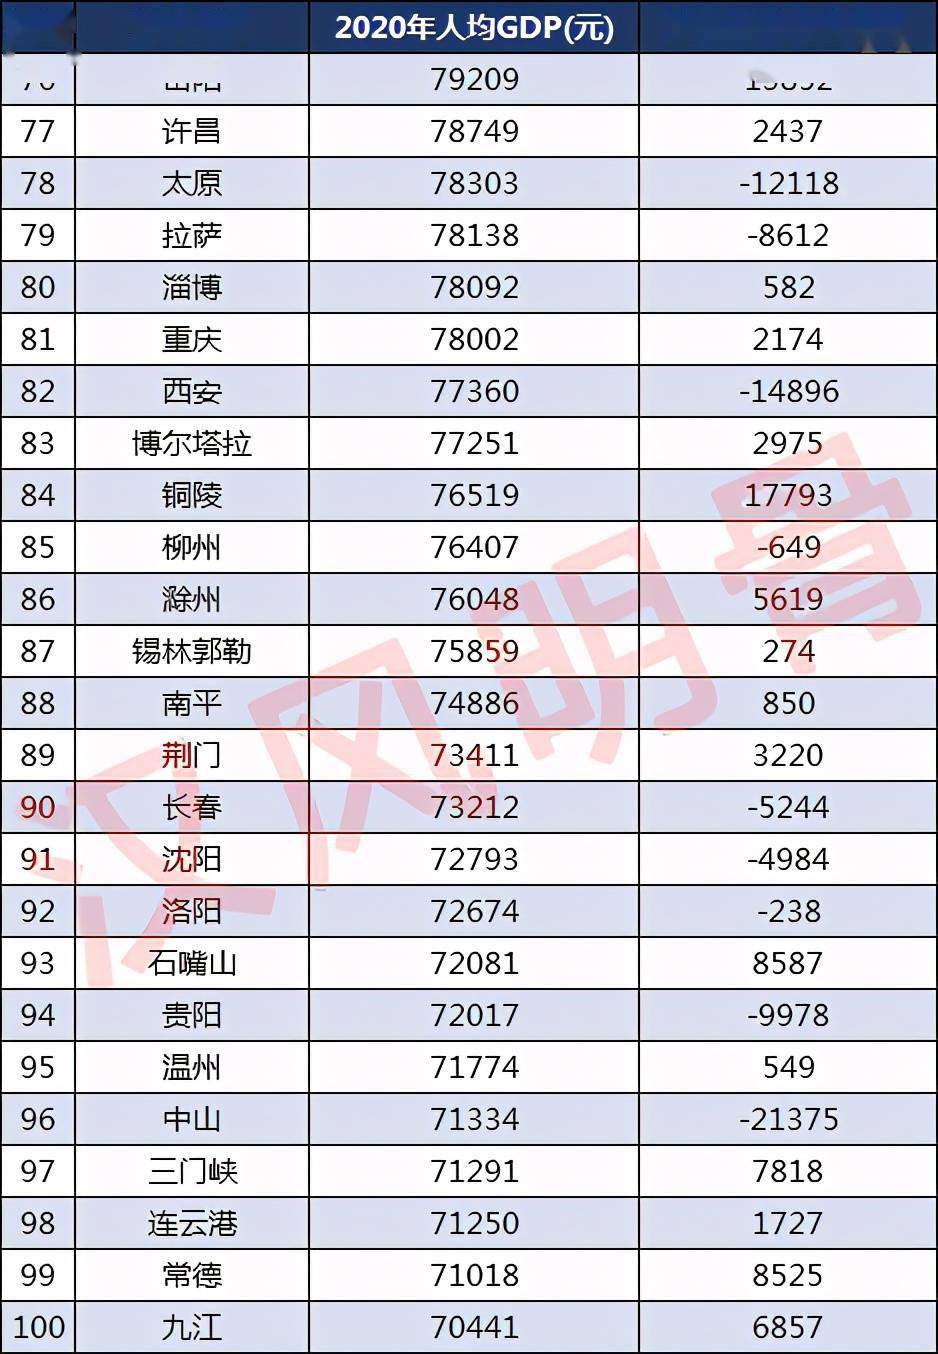 三门峡人均gdp为71291元排名第97,连云港人均gdp为71250元排名第98